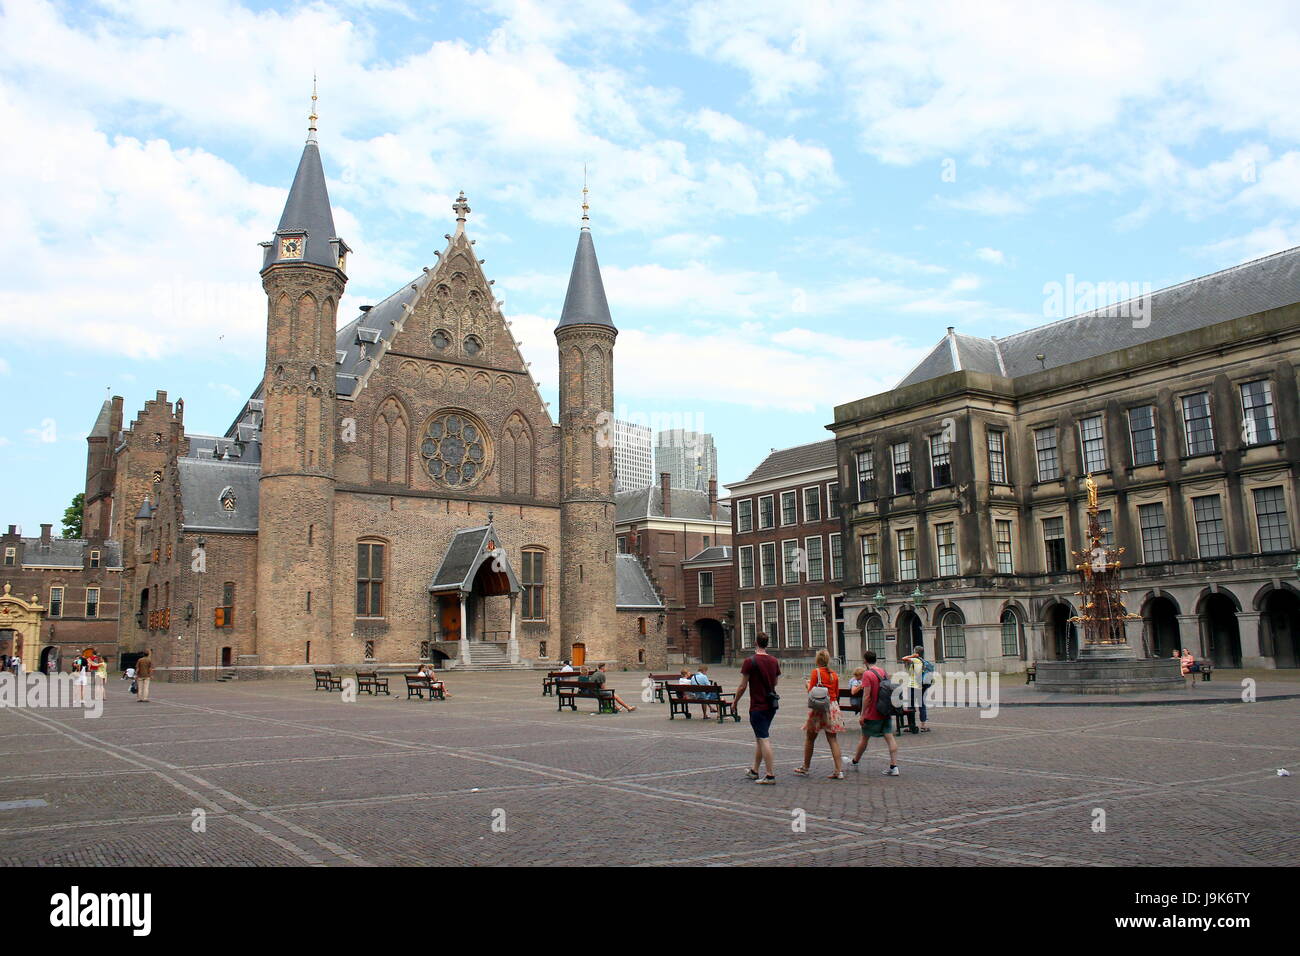 Binnenhof Platz mit Ridderzaal (Halle der Ritter) auf das 13. Jahrhundert Binnenhof in den Haag, Niederlande. Sitz der Regierung. Sommer 2017 Stockfoto